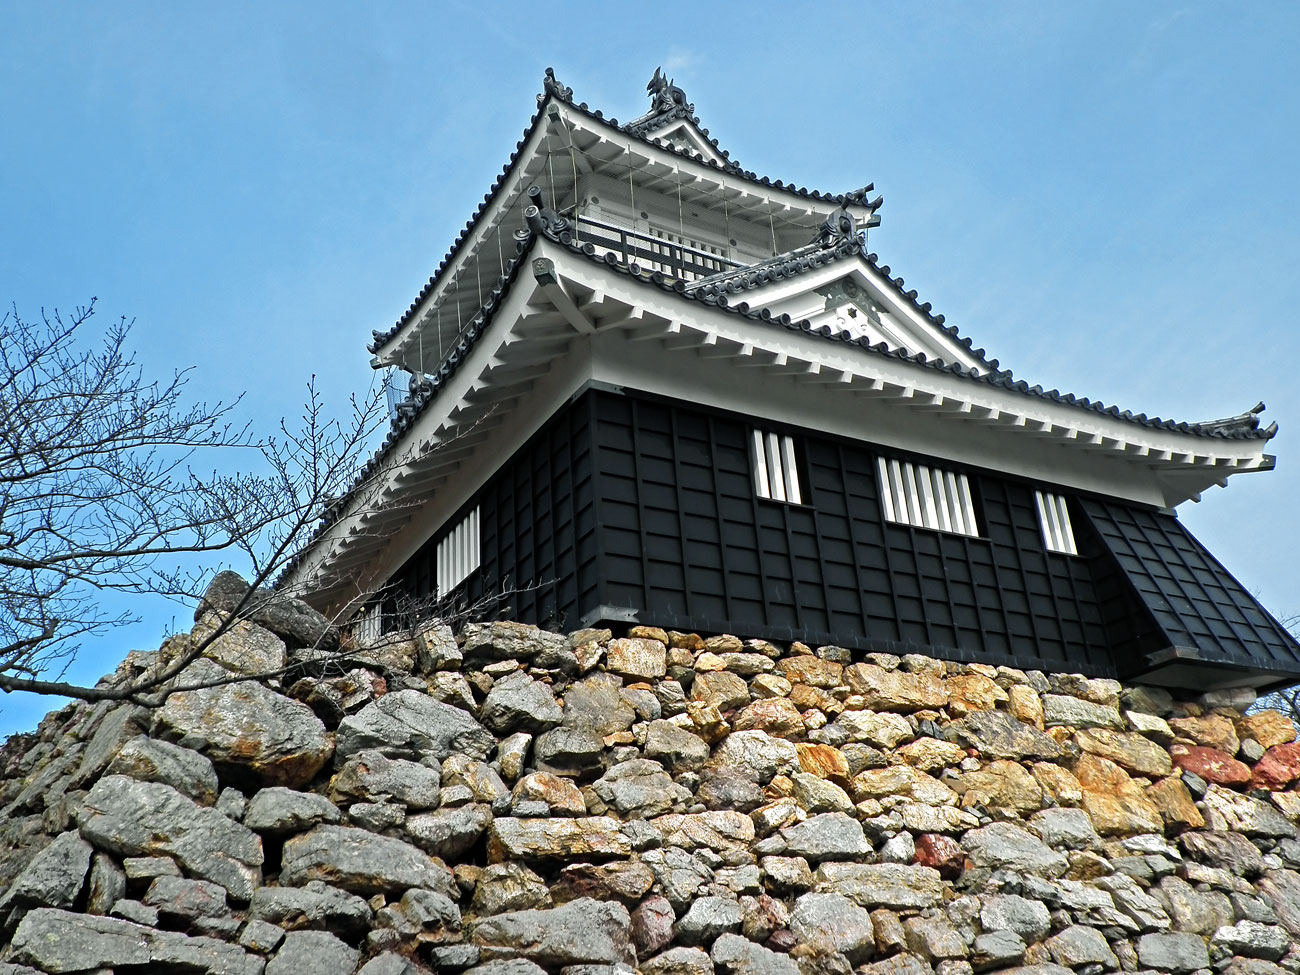 Tokugava Iejaszu hamamacui vára a XVI. századból